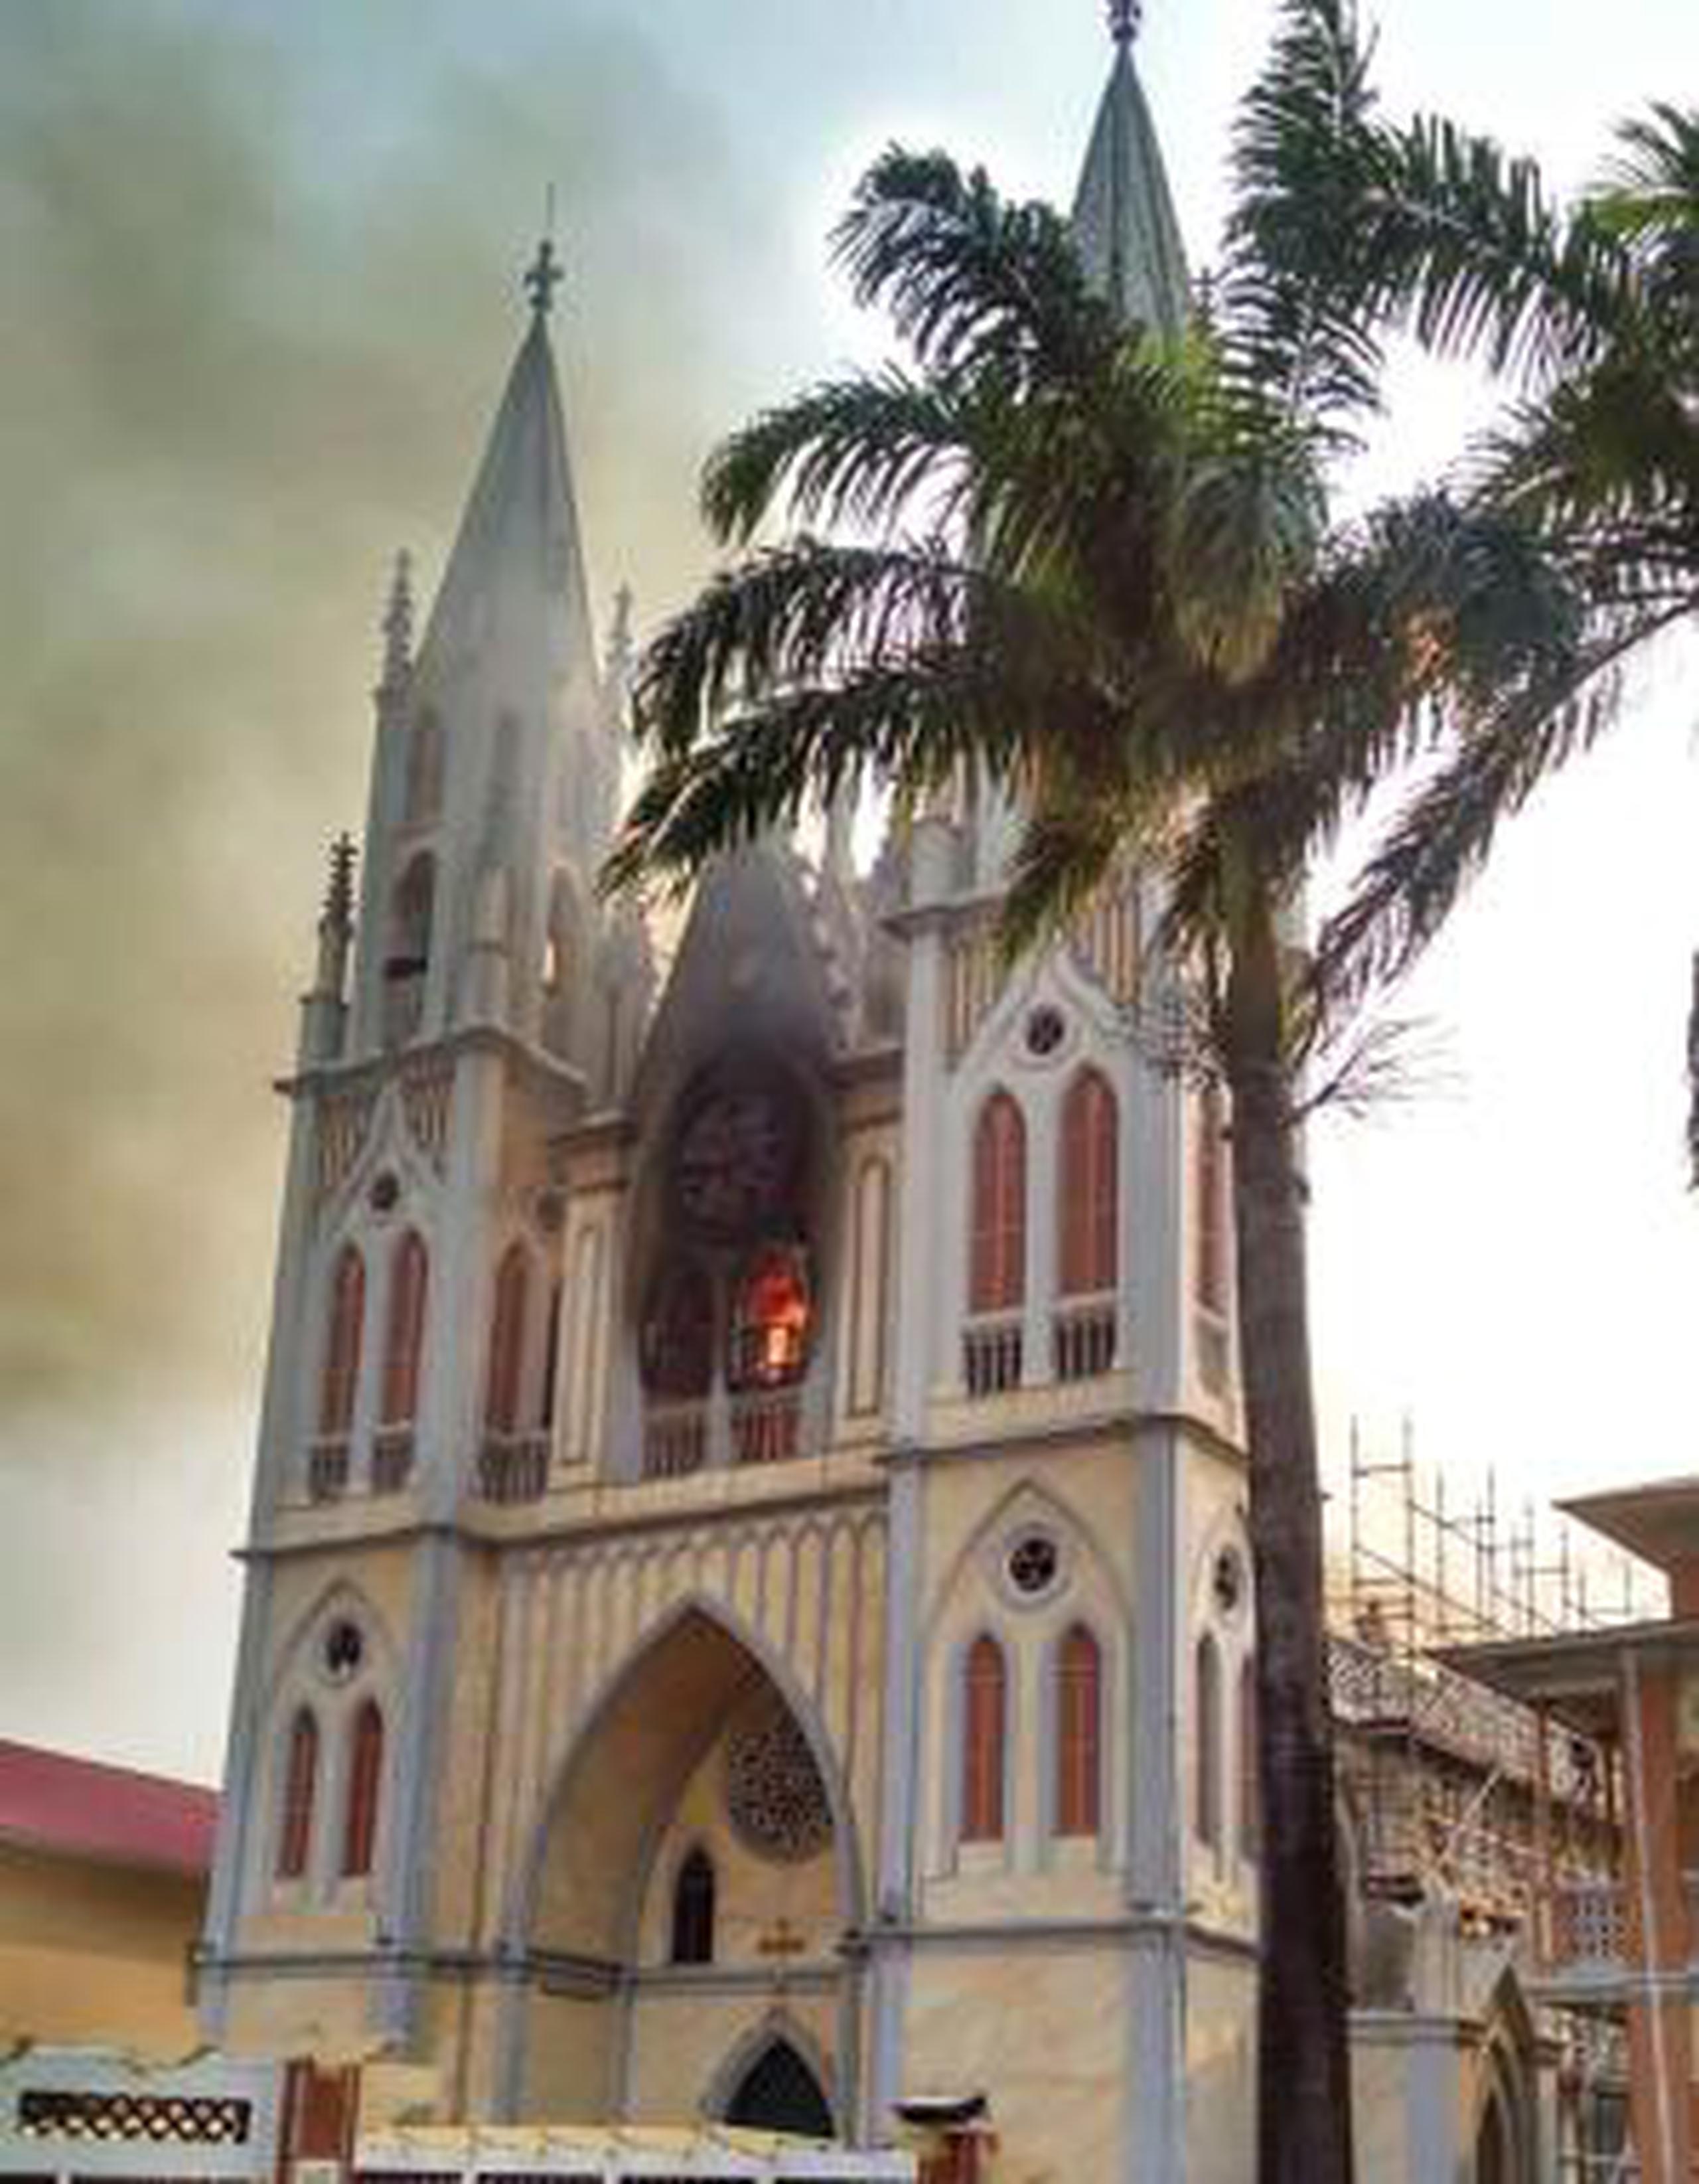 El incendio "ha arrasado su tejado prácticamente por completo. Aunque el frente de la catedral está afectado por humo negro, no se temen daños estructurales", aseguró hoy el Gobierno. (EFE)

